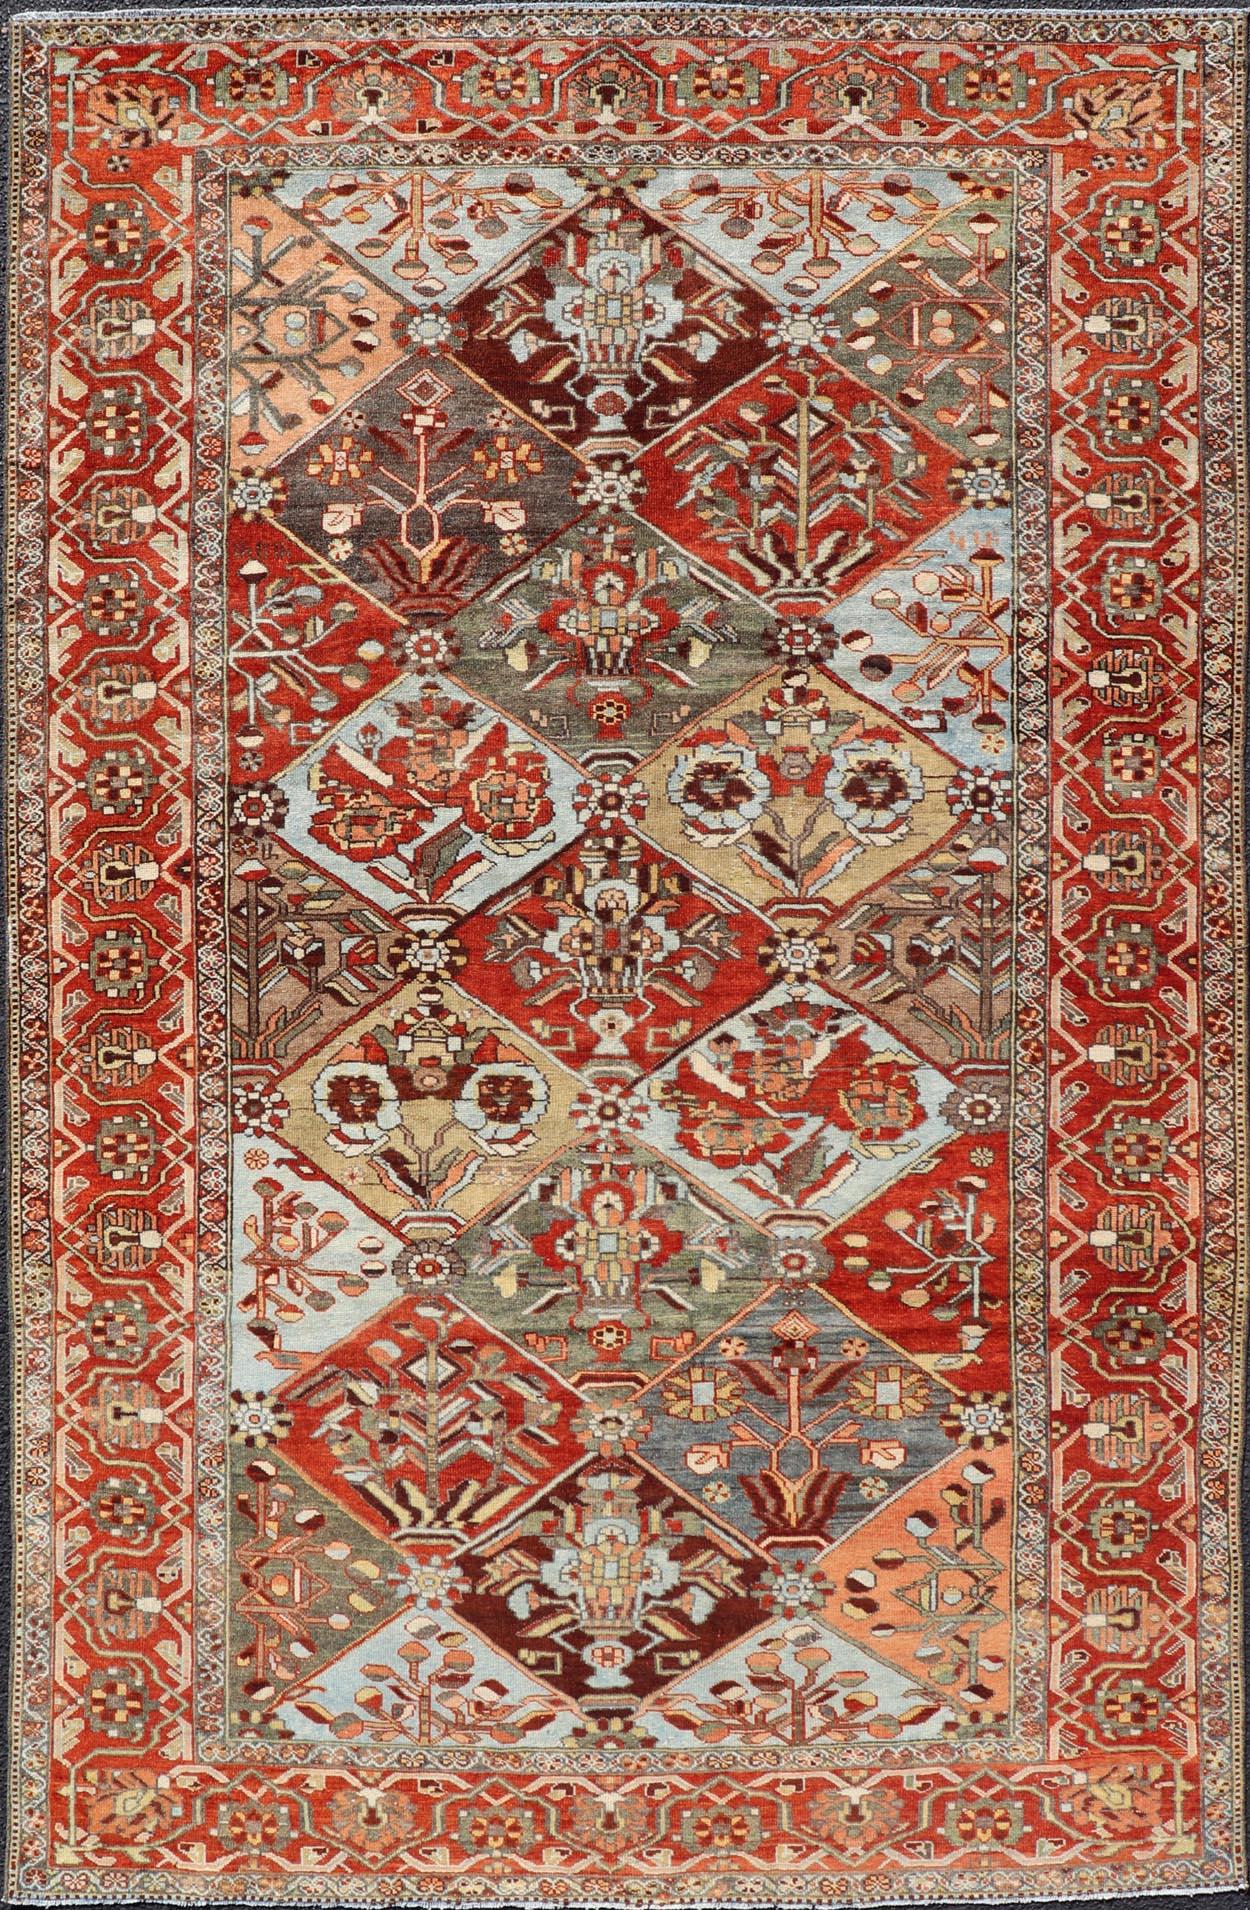 Antique Persian Bakhitari Colorful Rug in All-Over Diamond Garden Design 